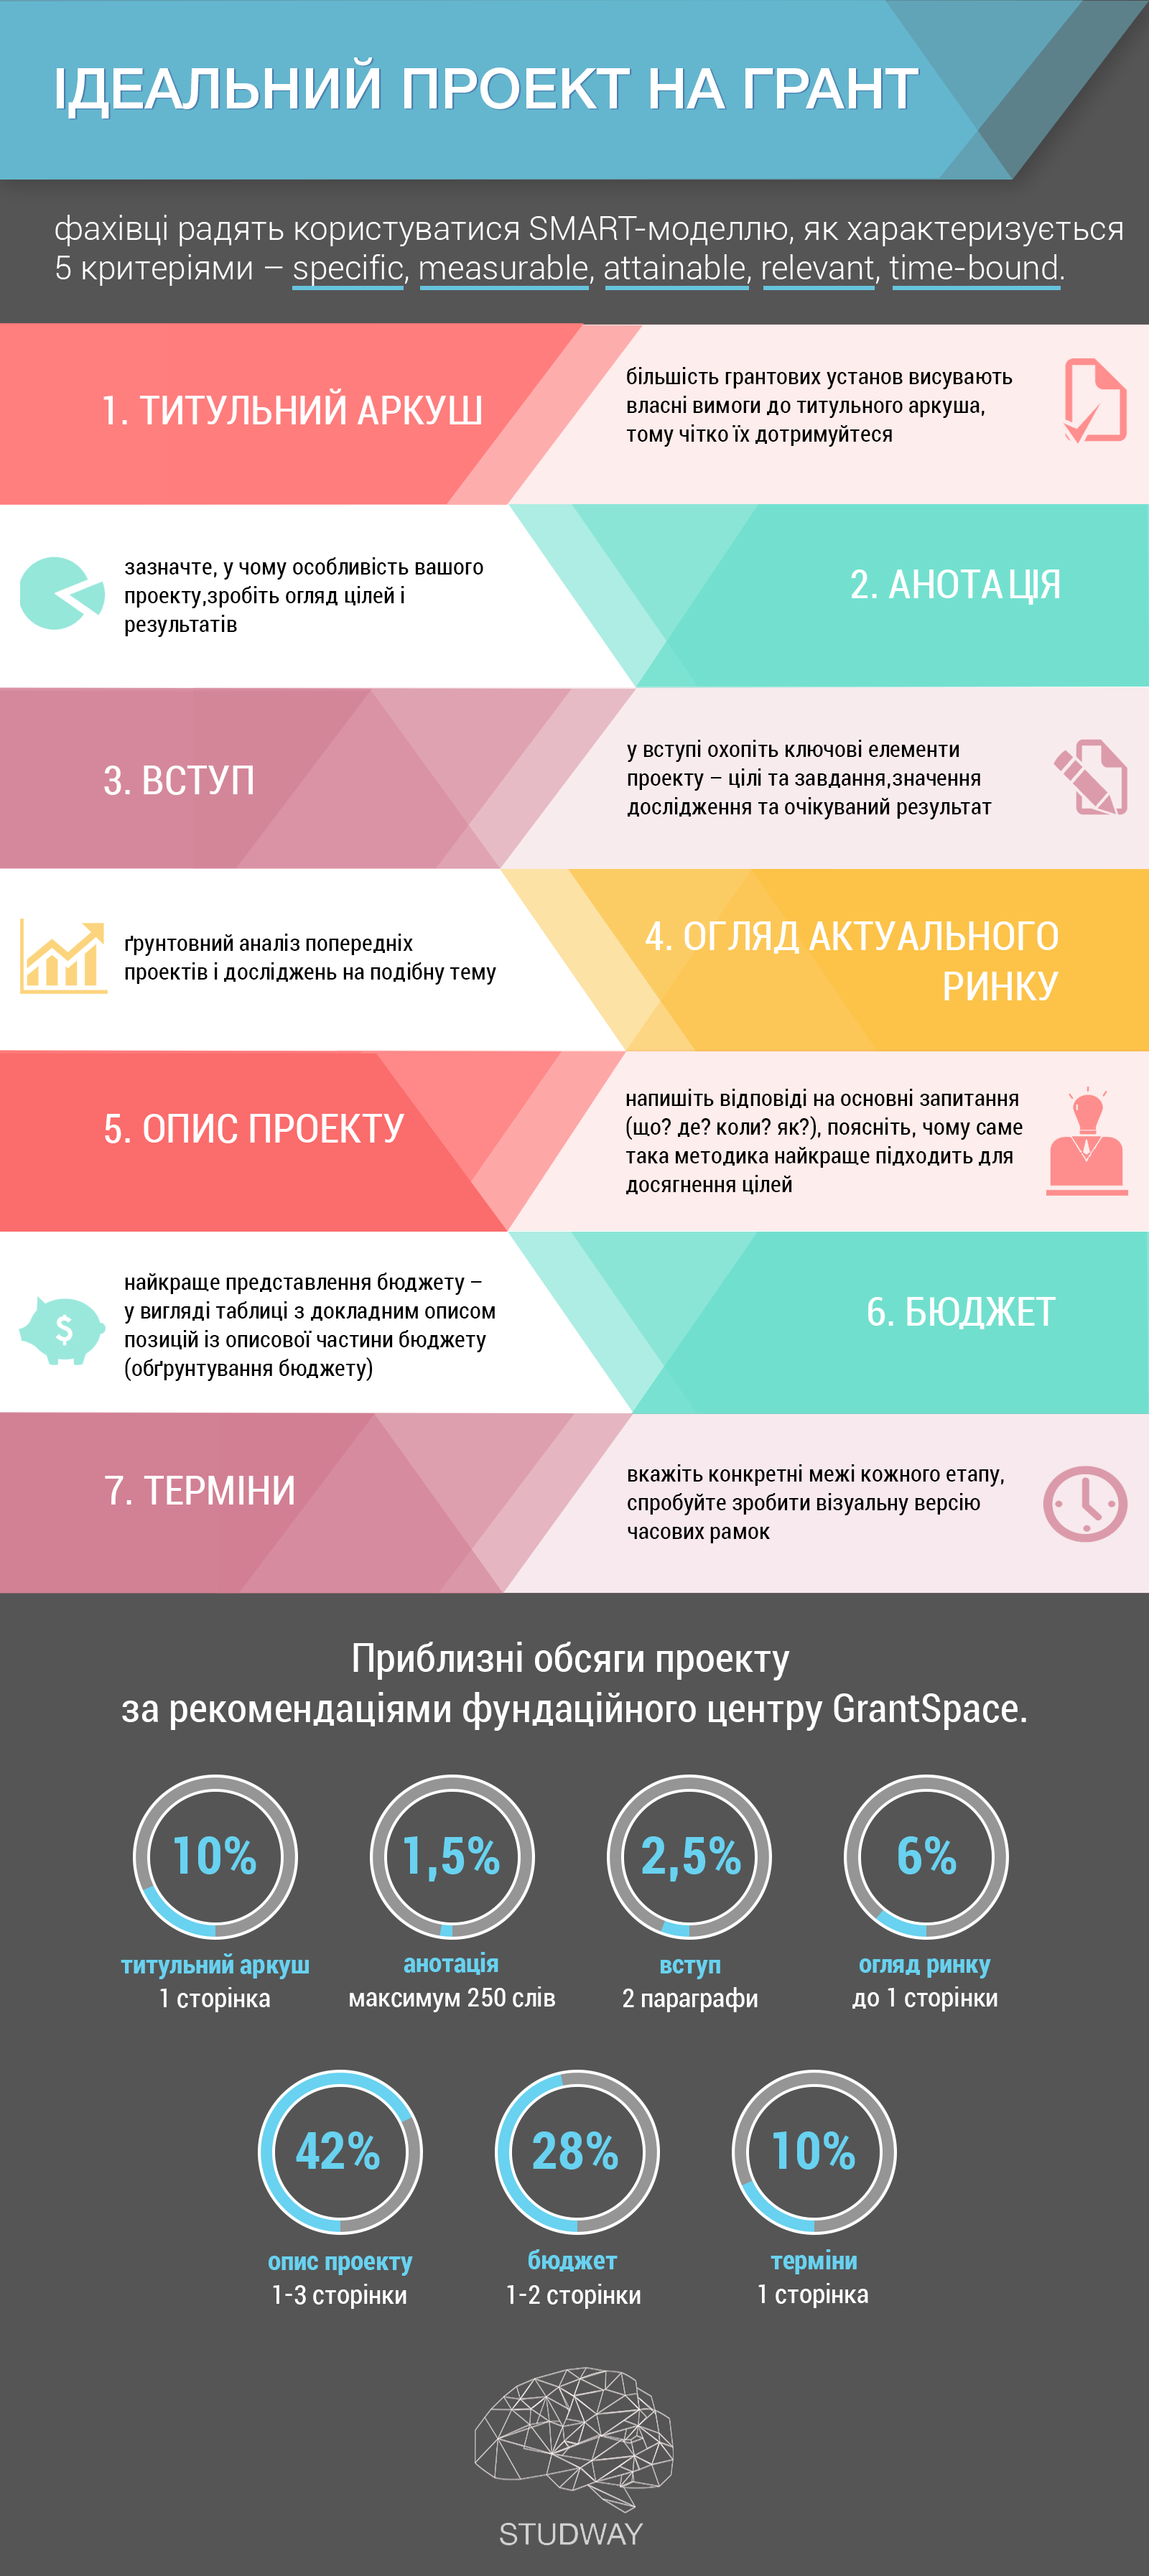 infografika-dlya-studway-1